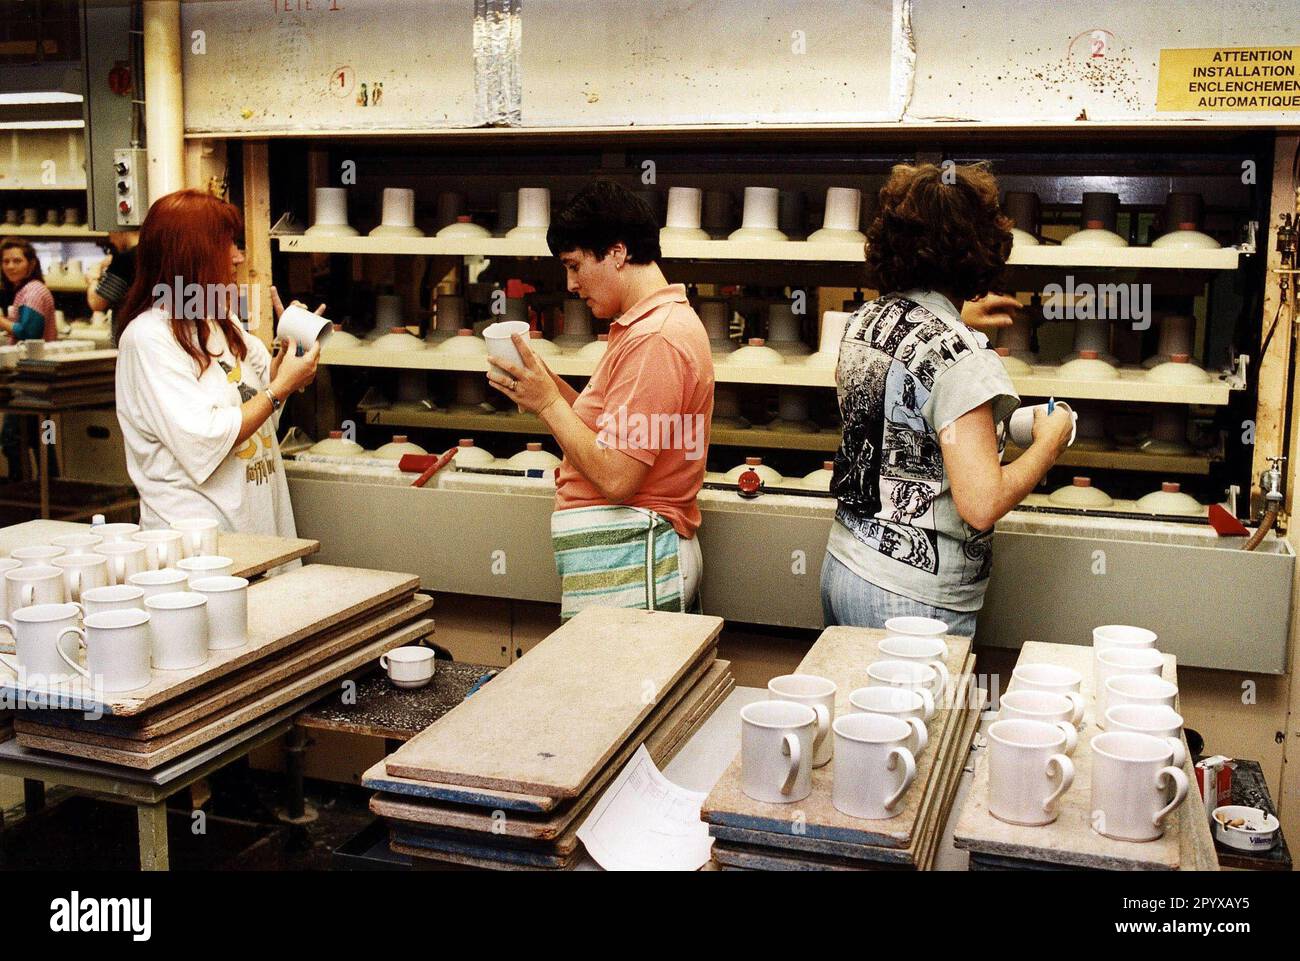 Aufnahmedatum: 01.10.1999 Villeroy und Boch: Porzellanfabrik in Luxemburg. [Maschinelle Übersetzung] Stockfoto